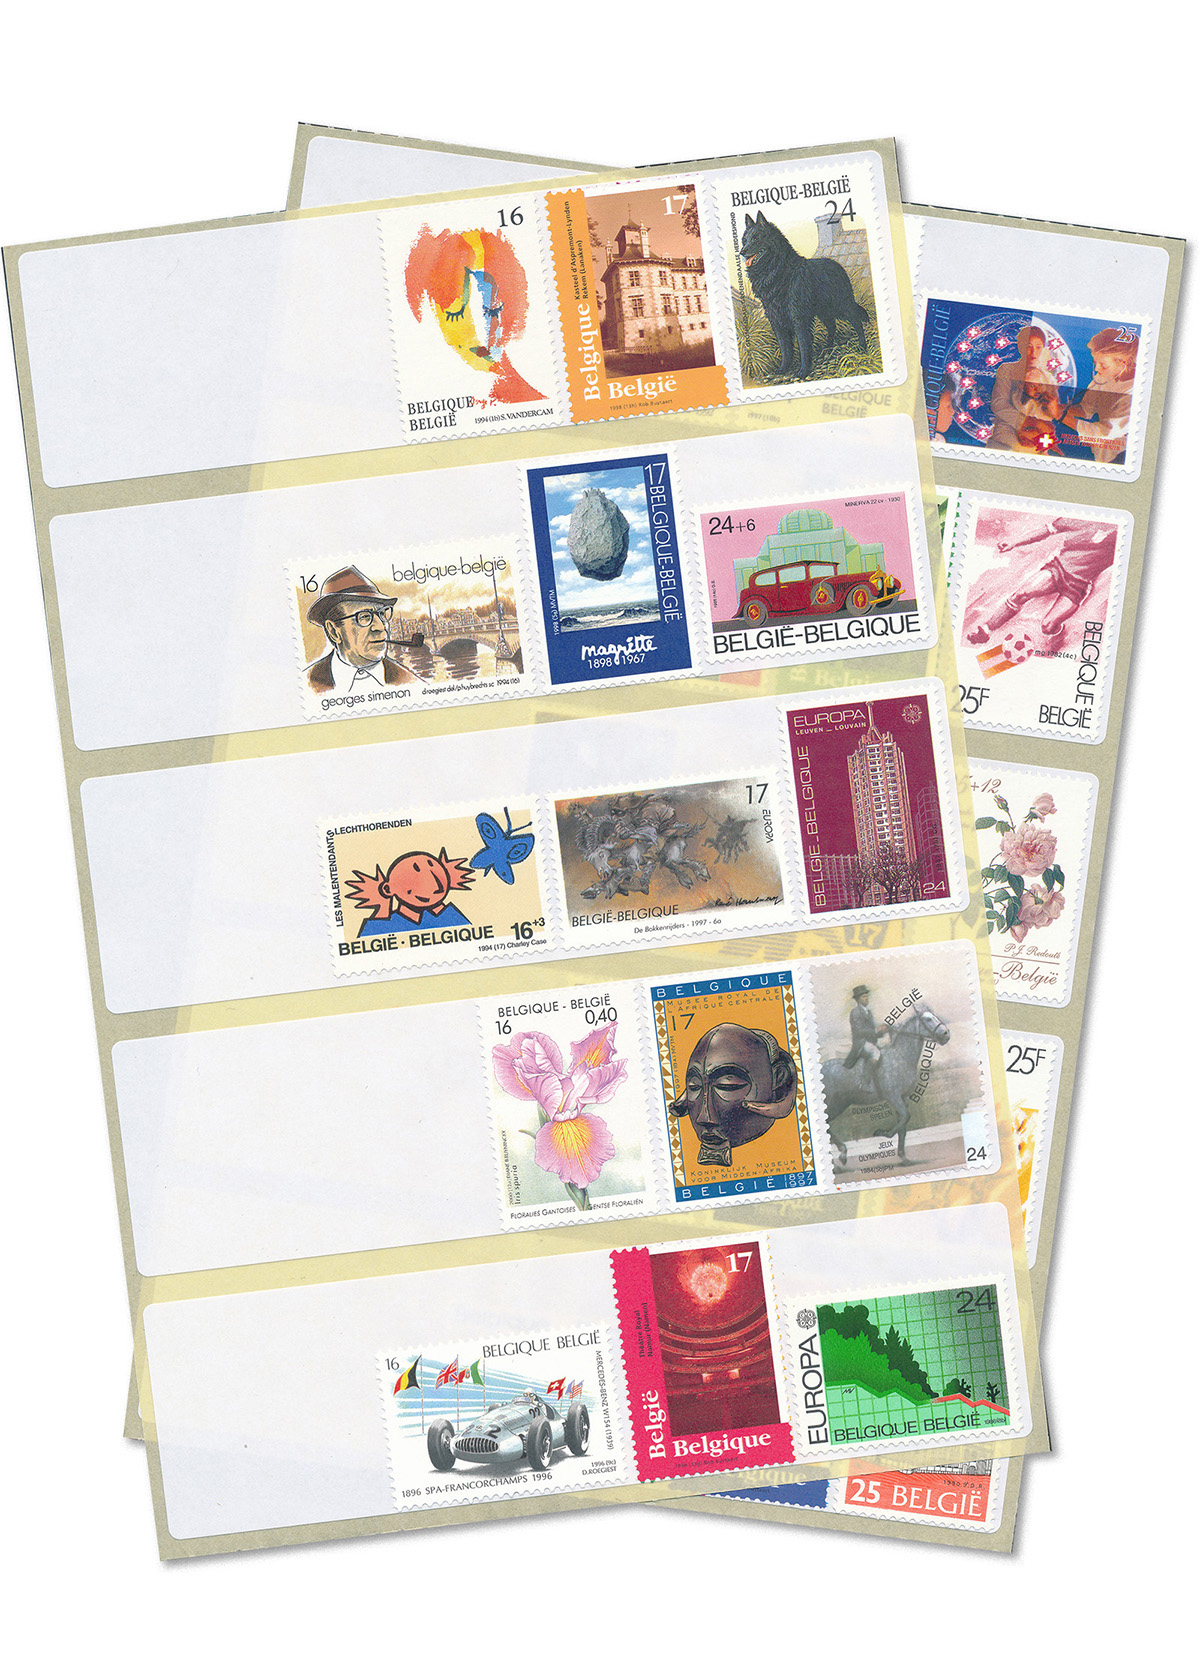 Briefmarken-etiketten